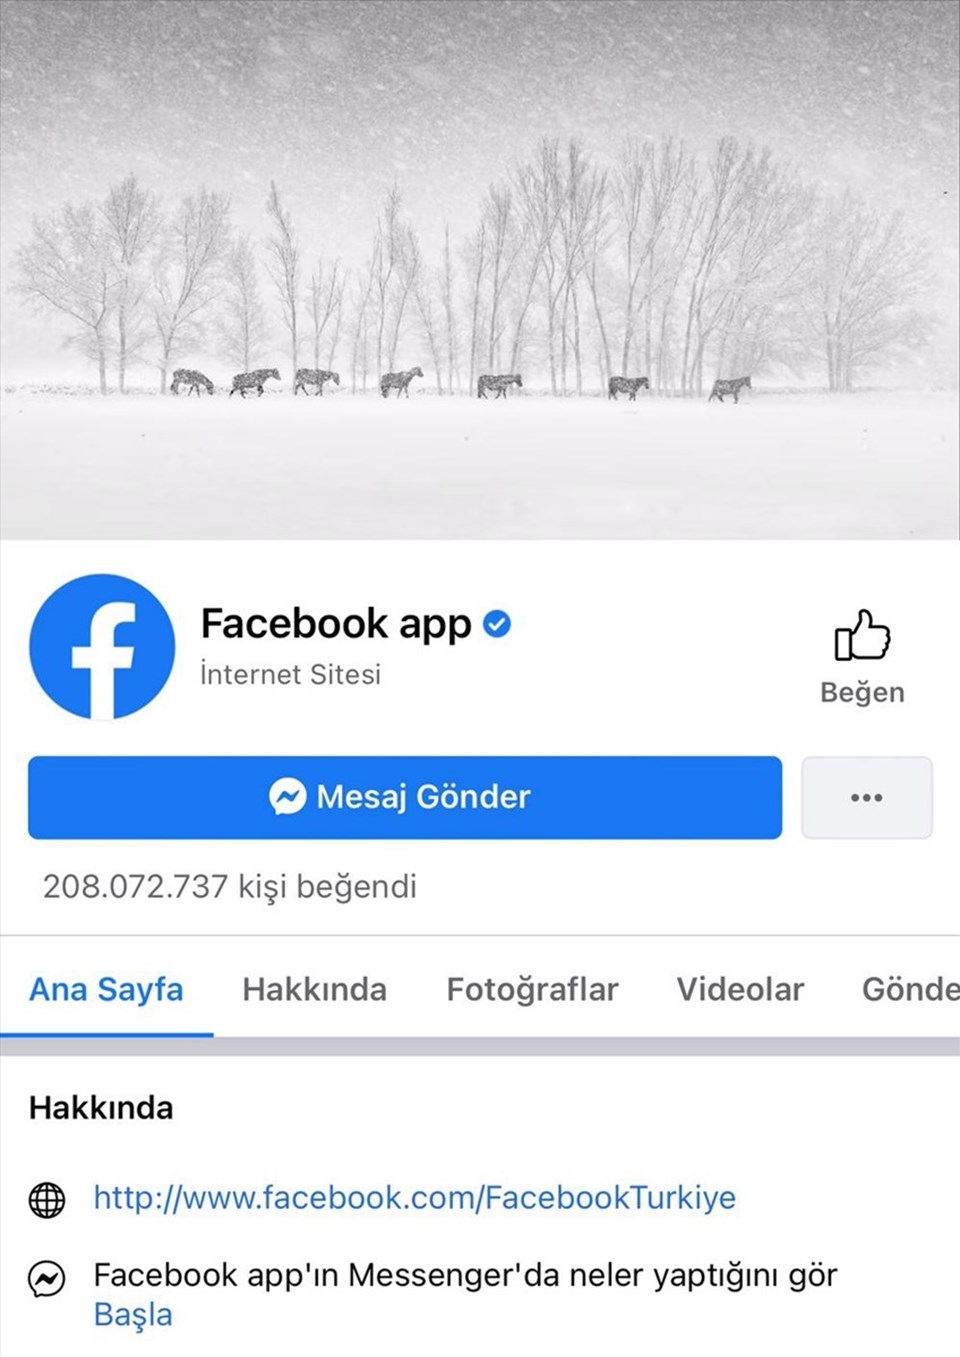 Facebook Türkiye, Hürmetçi'nin yılkı atlarını kapak fotoğrafı yaptı - 1